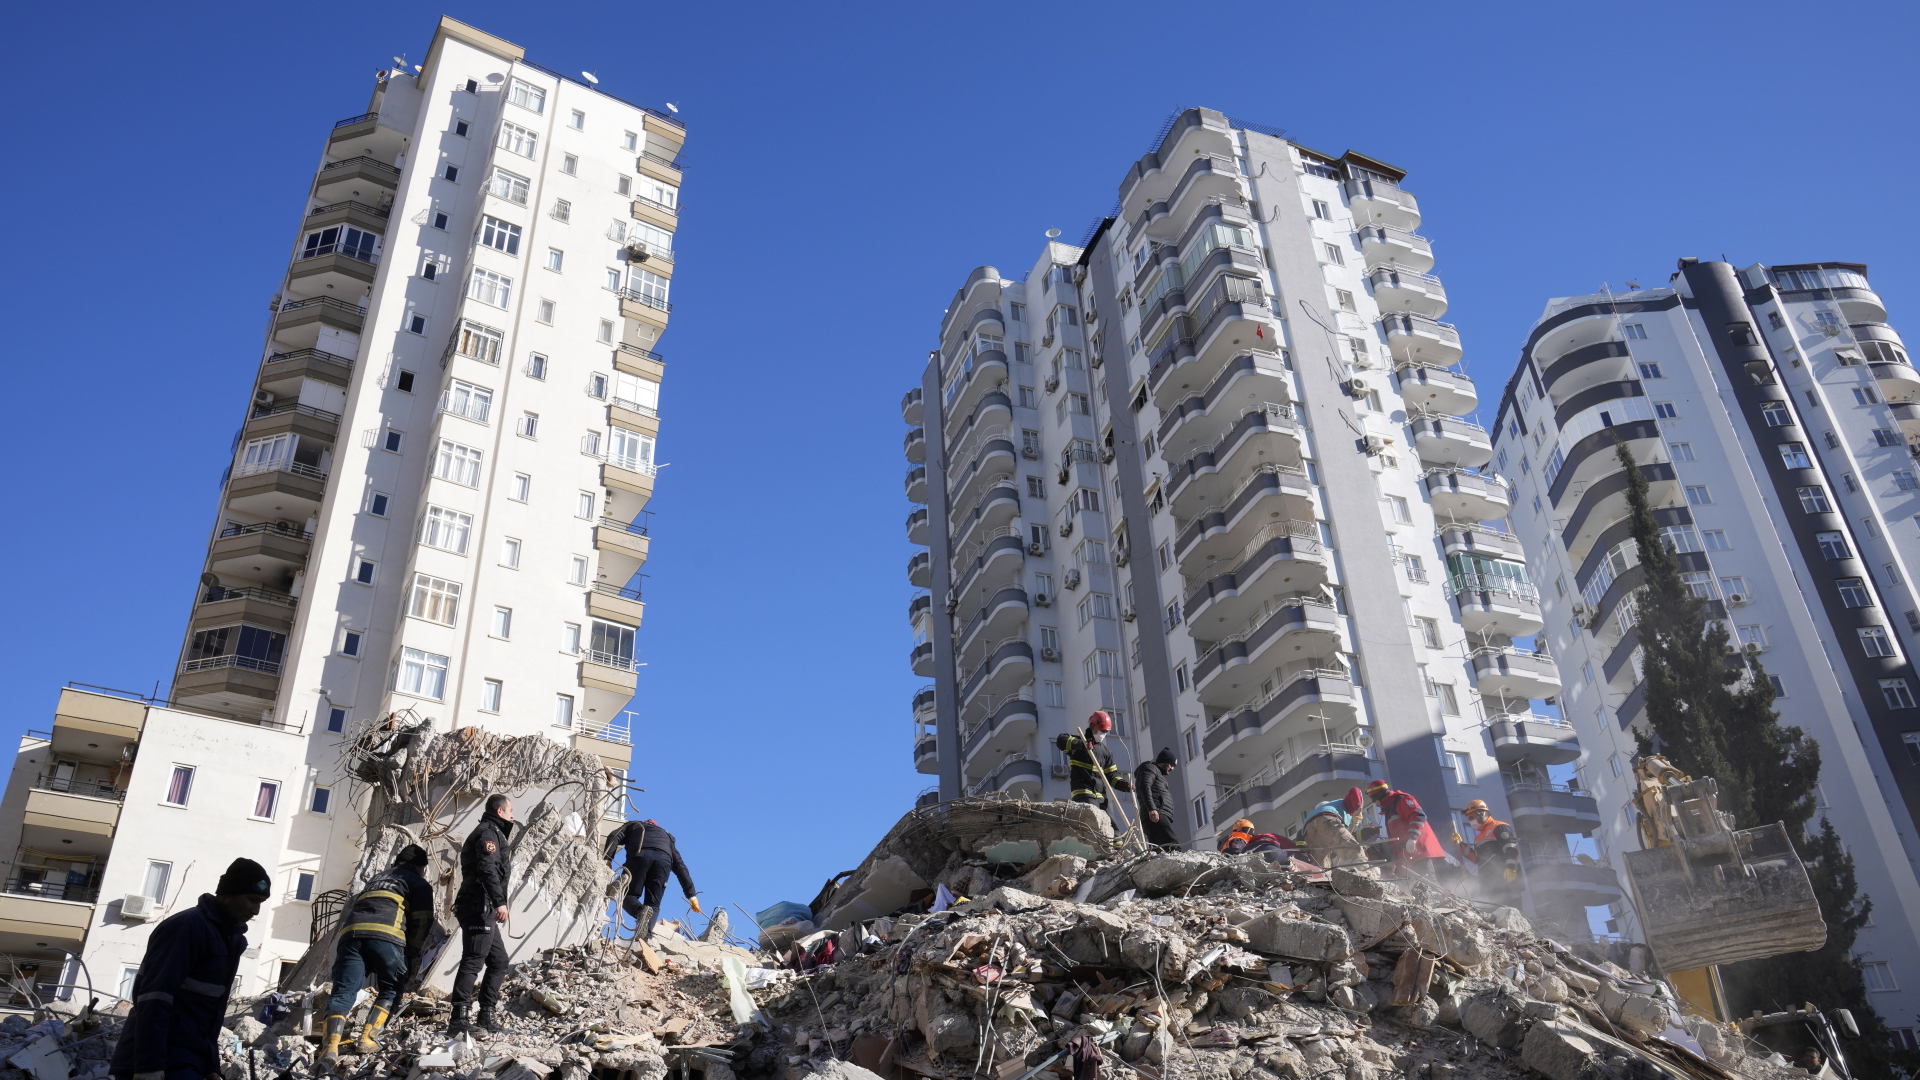 Notfallteams suchen nach Menschen in den Trümmern eines zerstörten Gebäudes in Adana | dpa